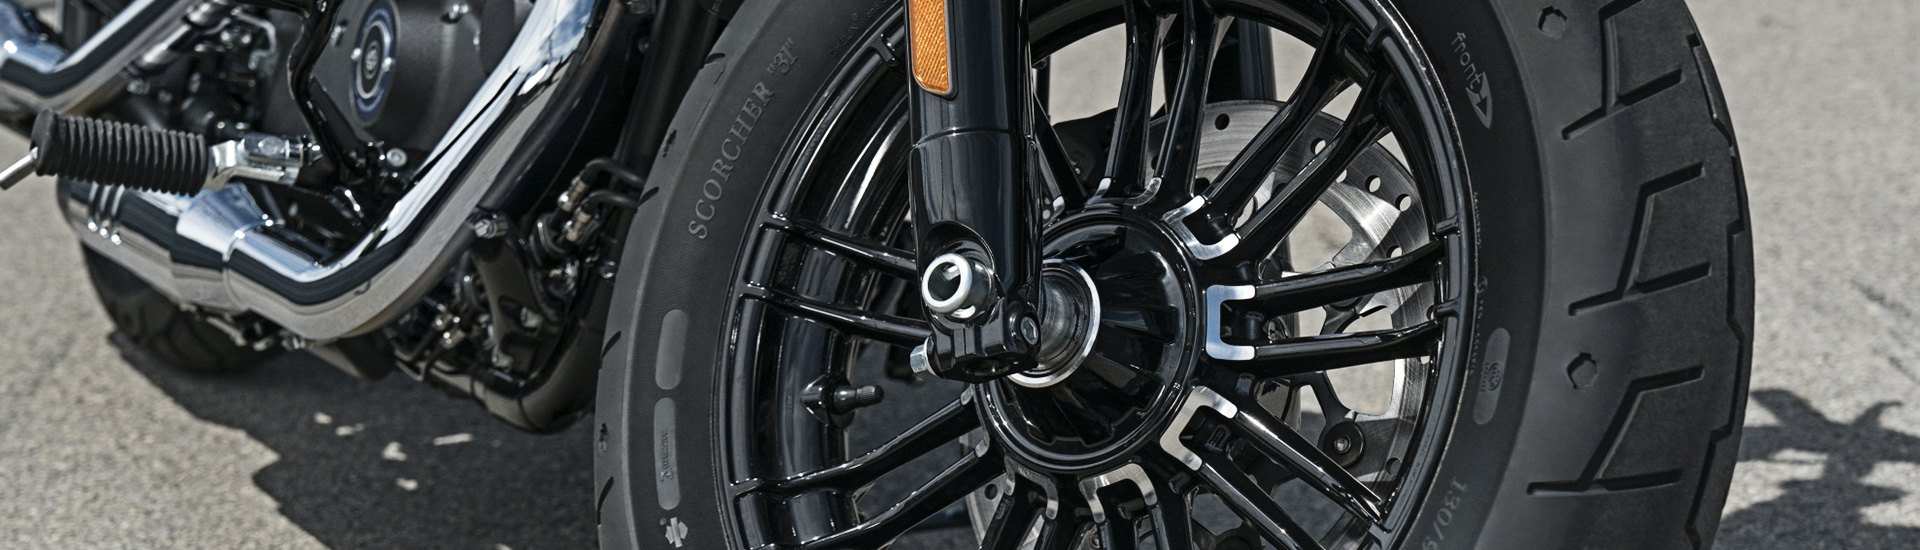 Motorcycle Wheels Tires